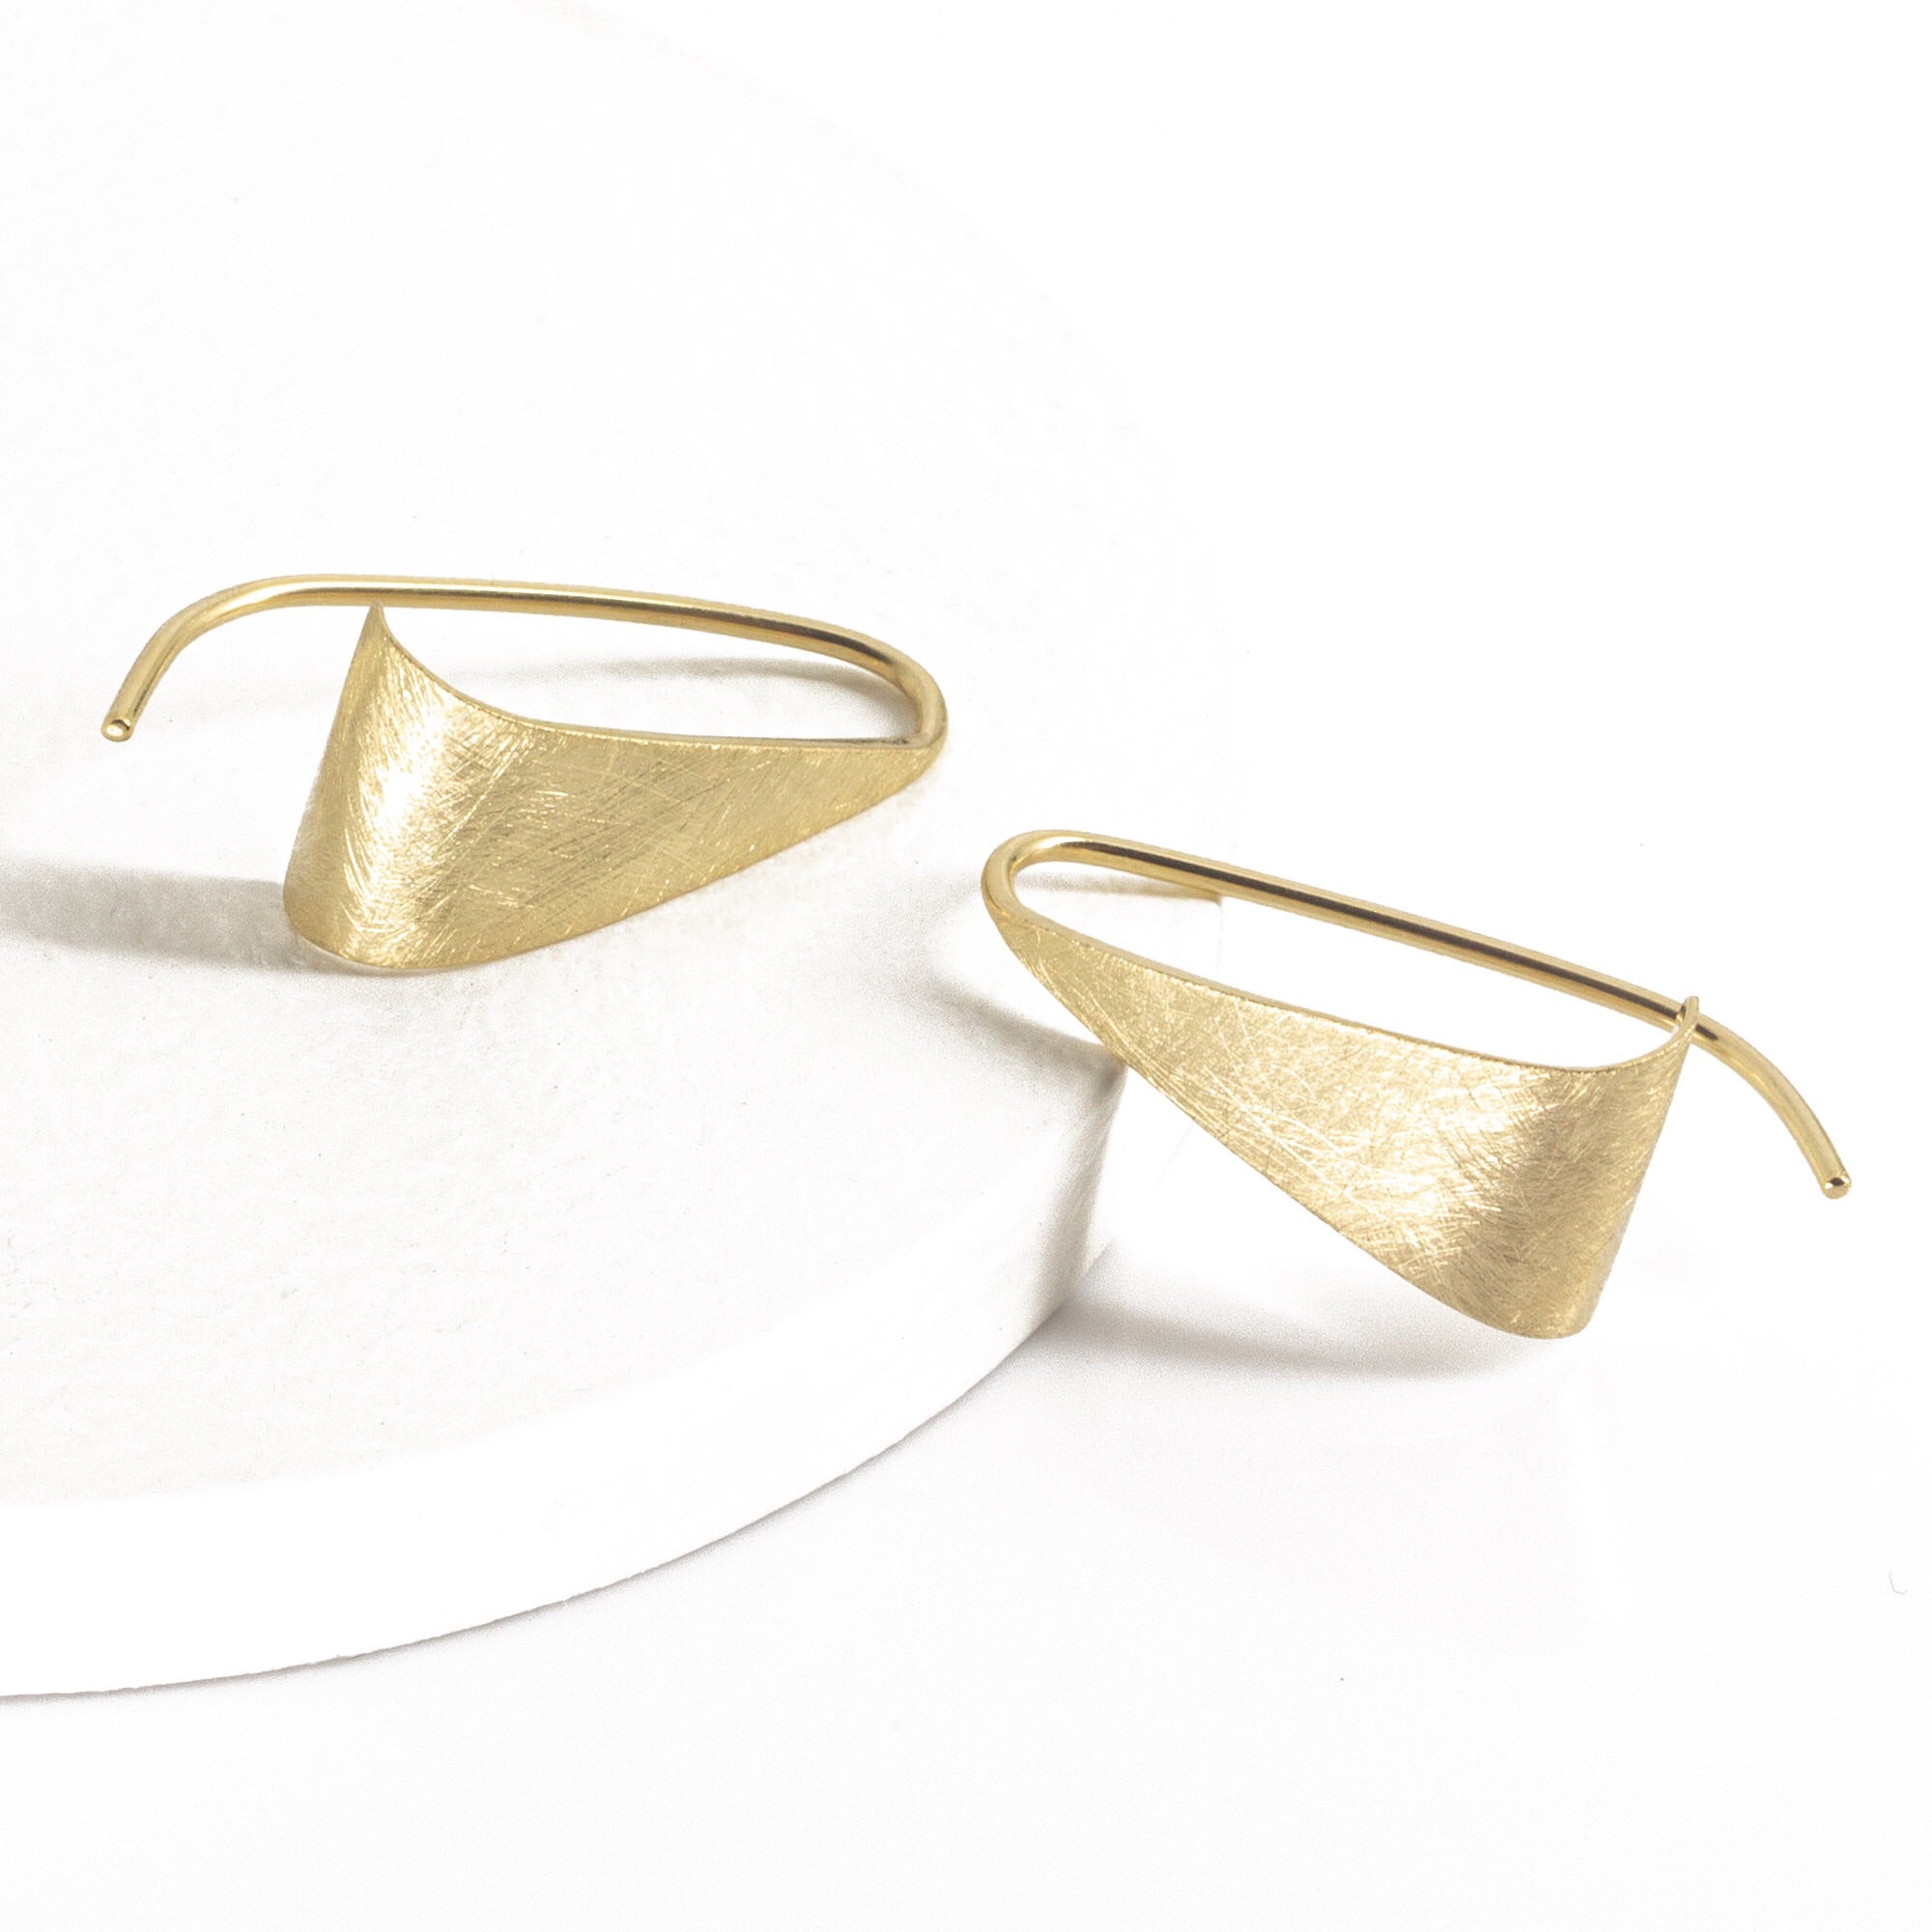 Hanover - 14k gold earrings